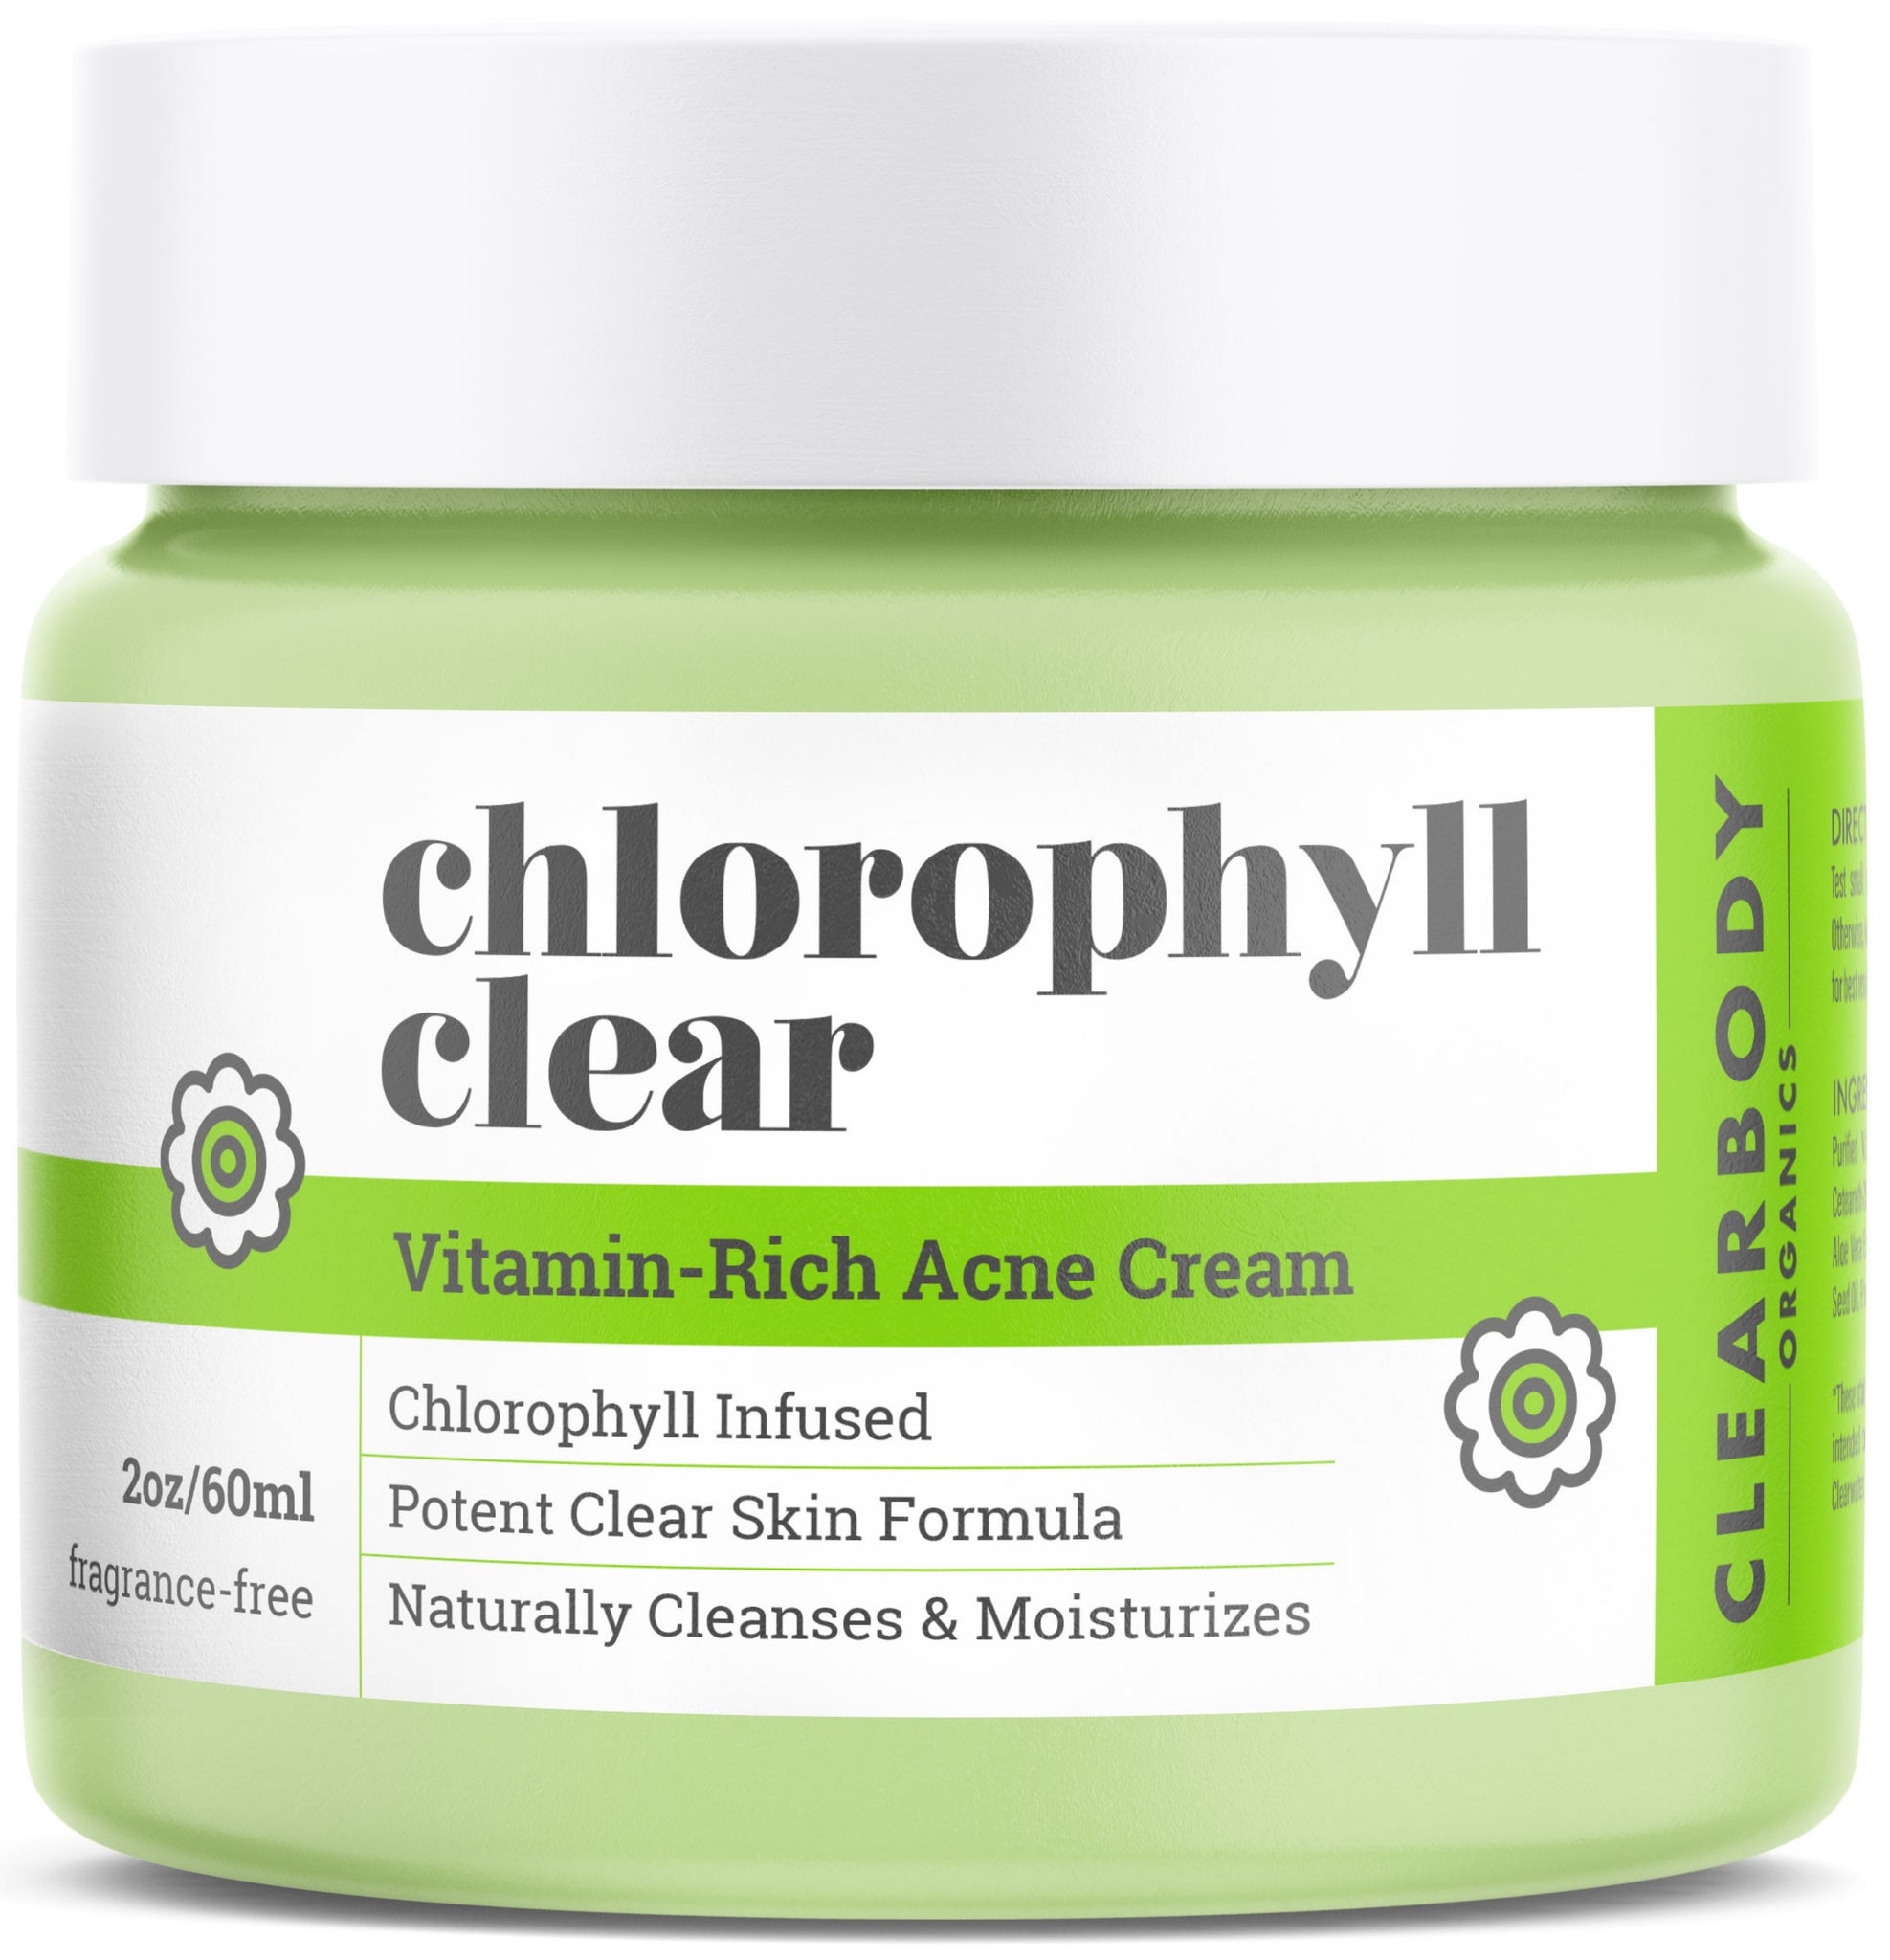 Clearbody Organics Chlorophyll Clear Vitamin-Rich Acne Cream